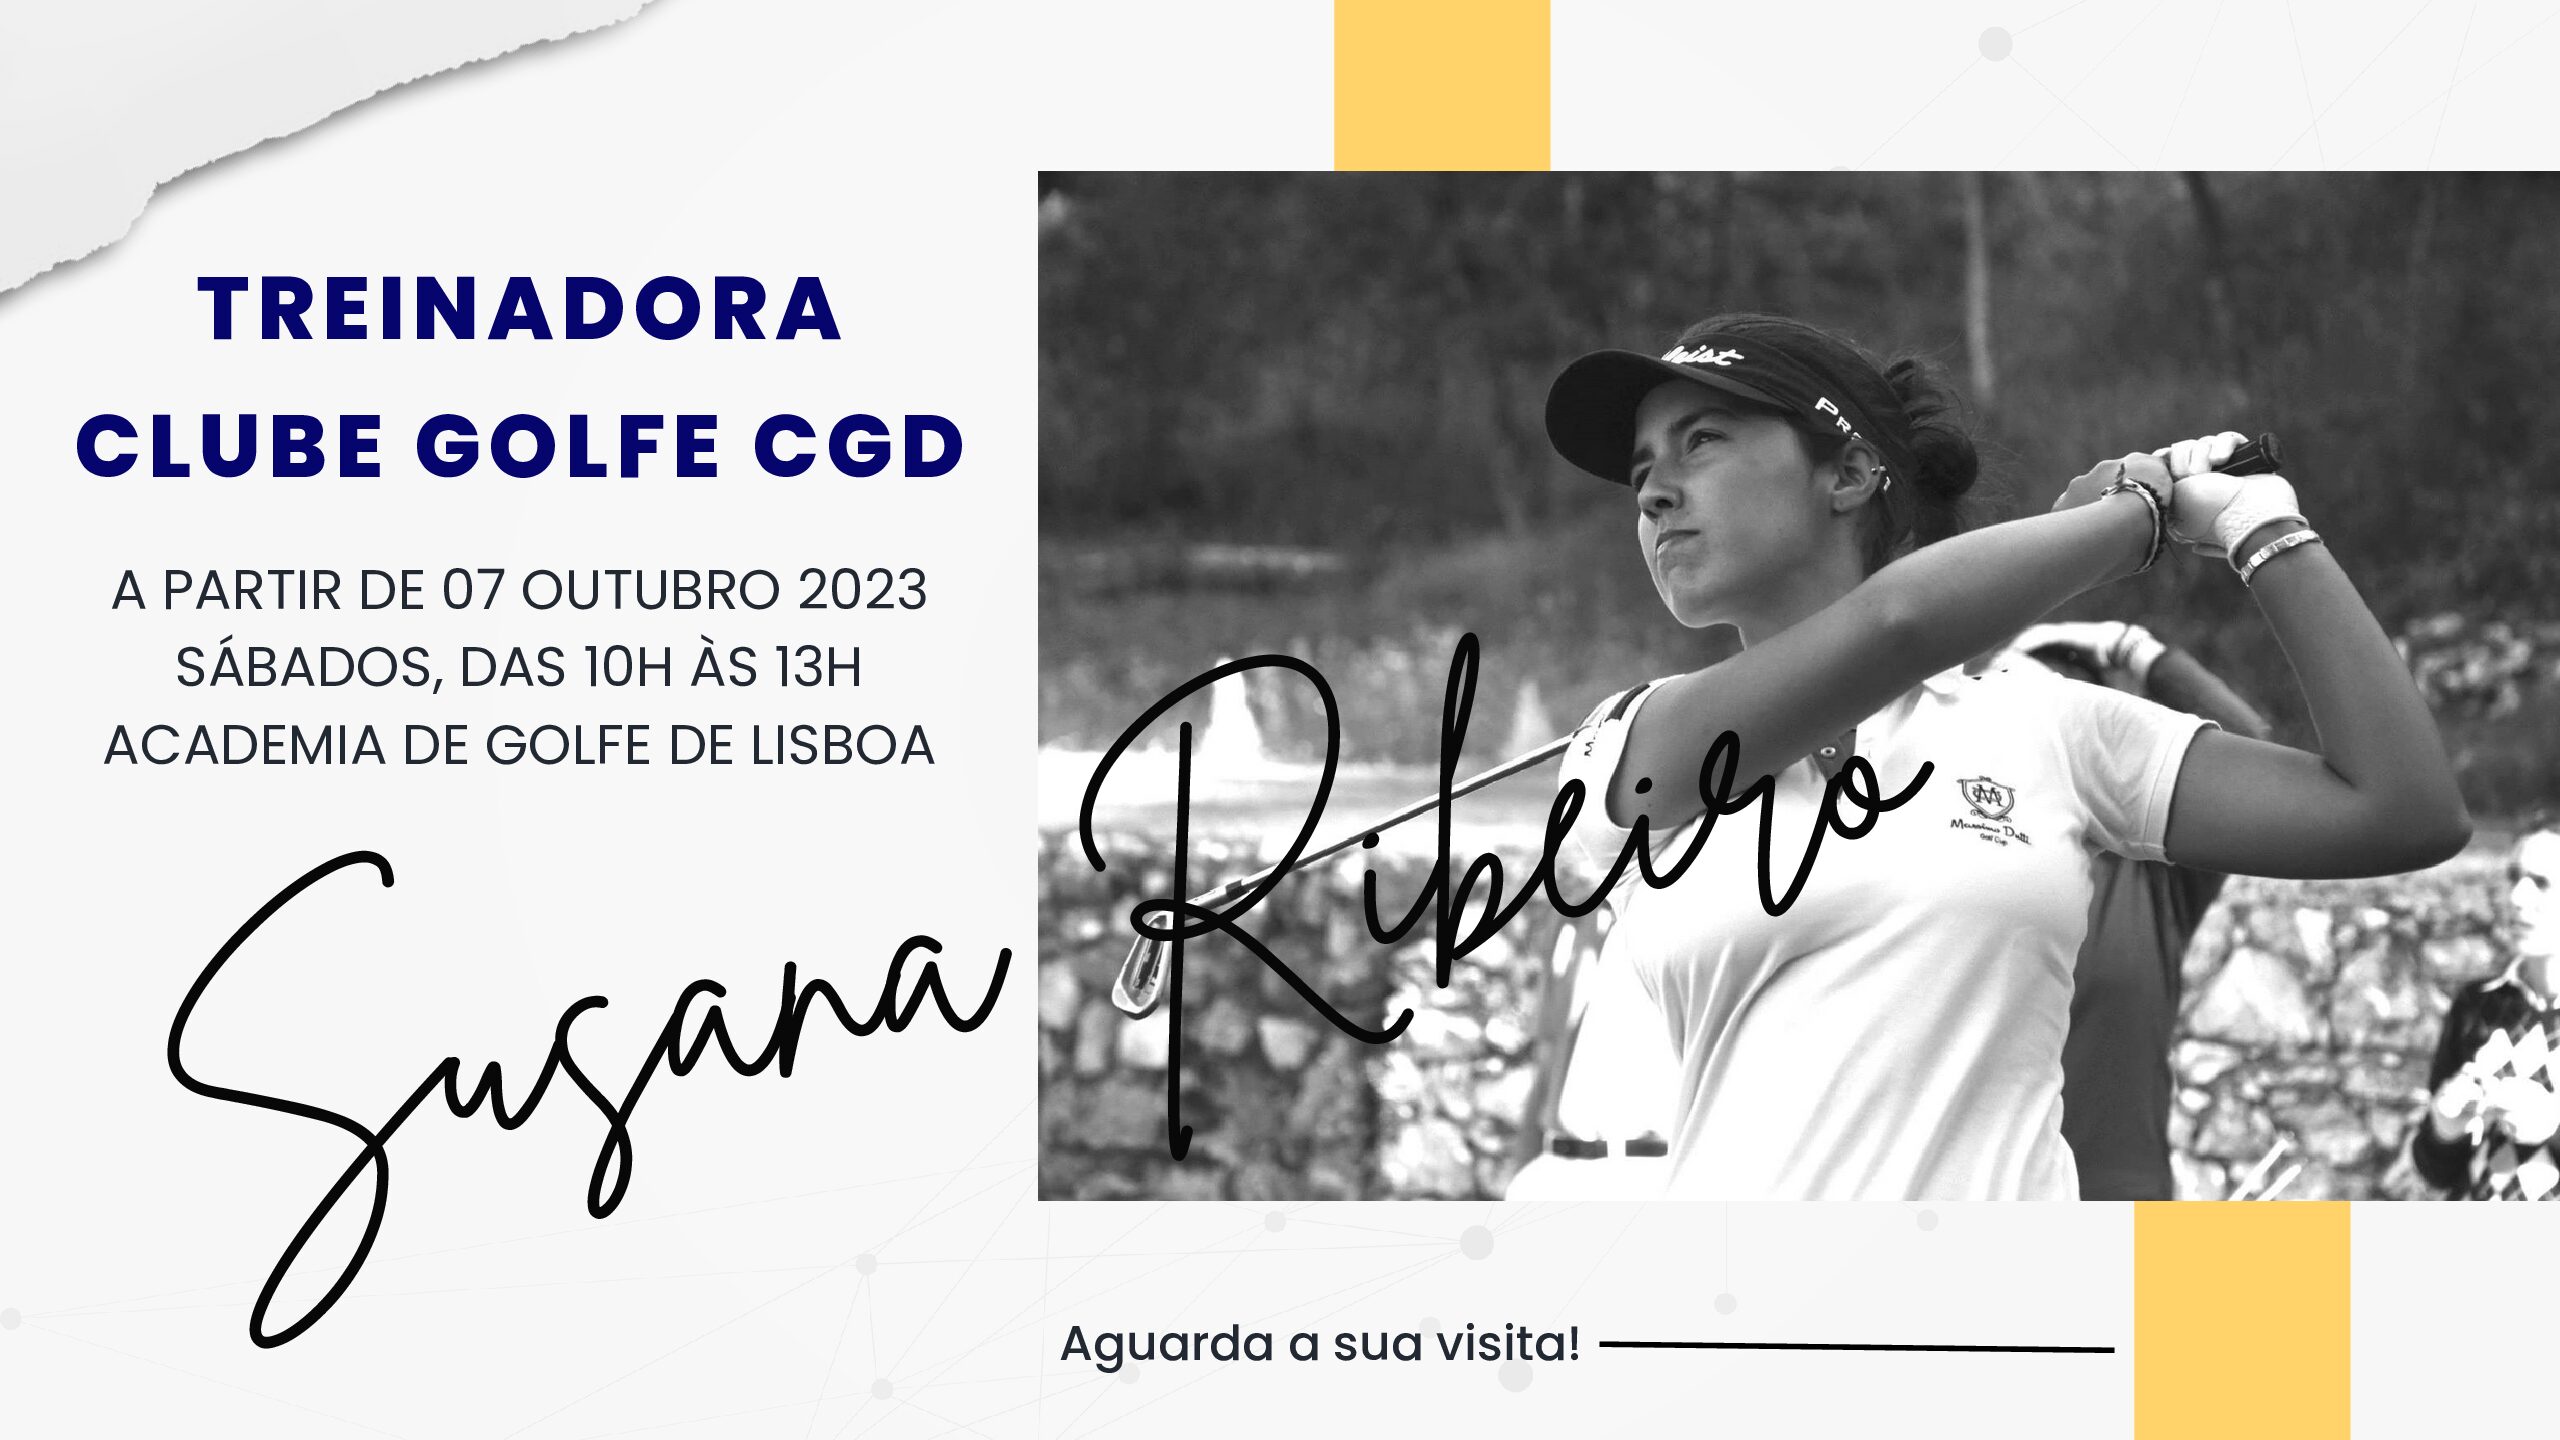 Susana Ribeiro é a nova treinadora do Clube de Golfe CGD.